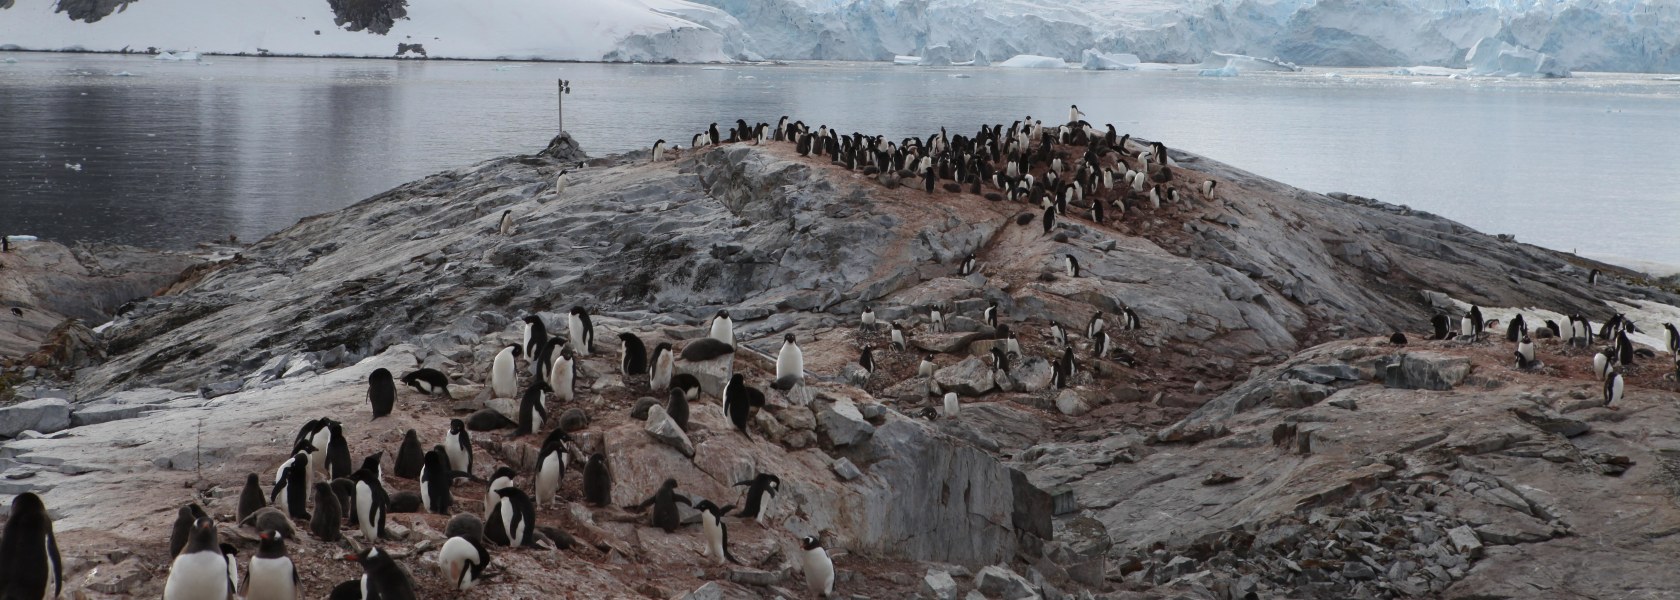 Penguins Antactica